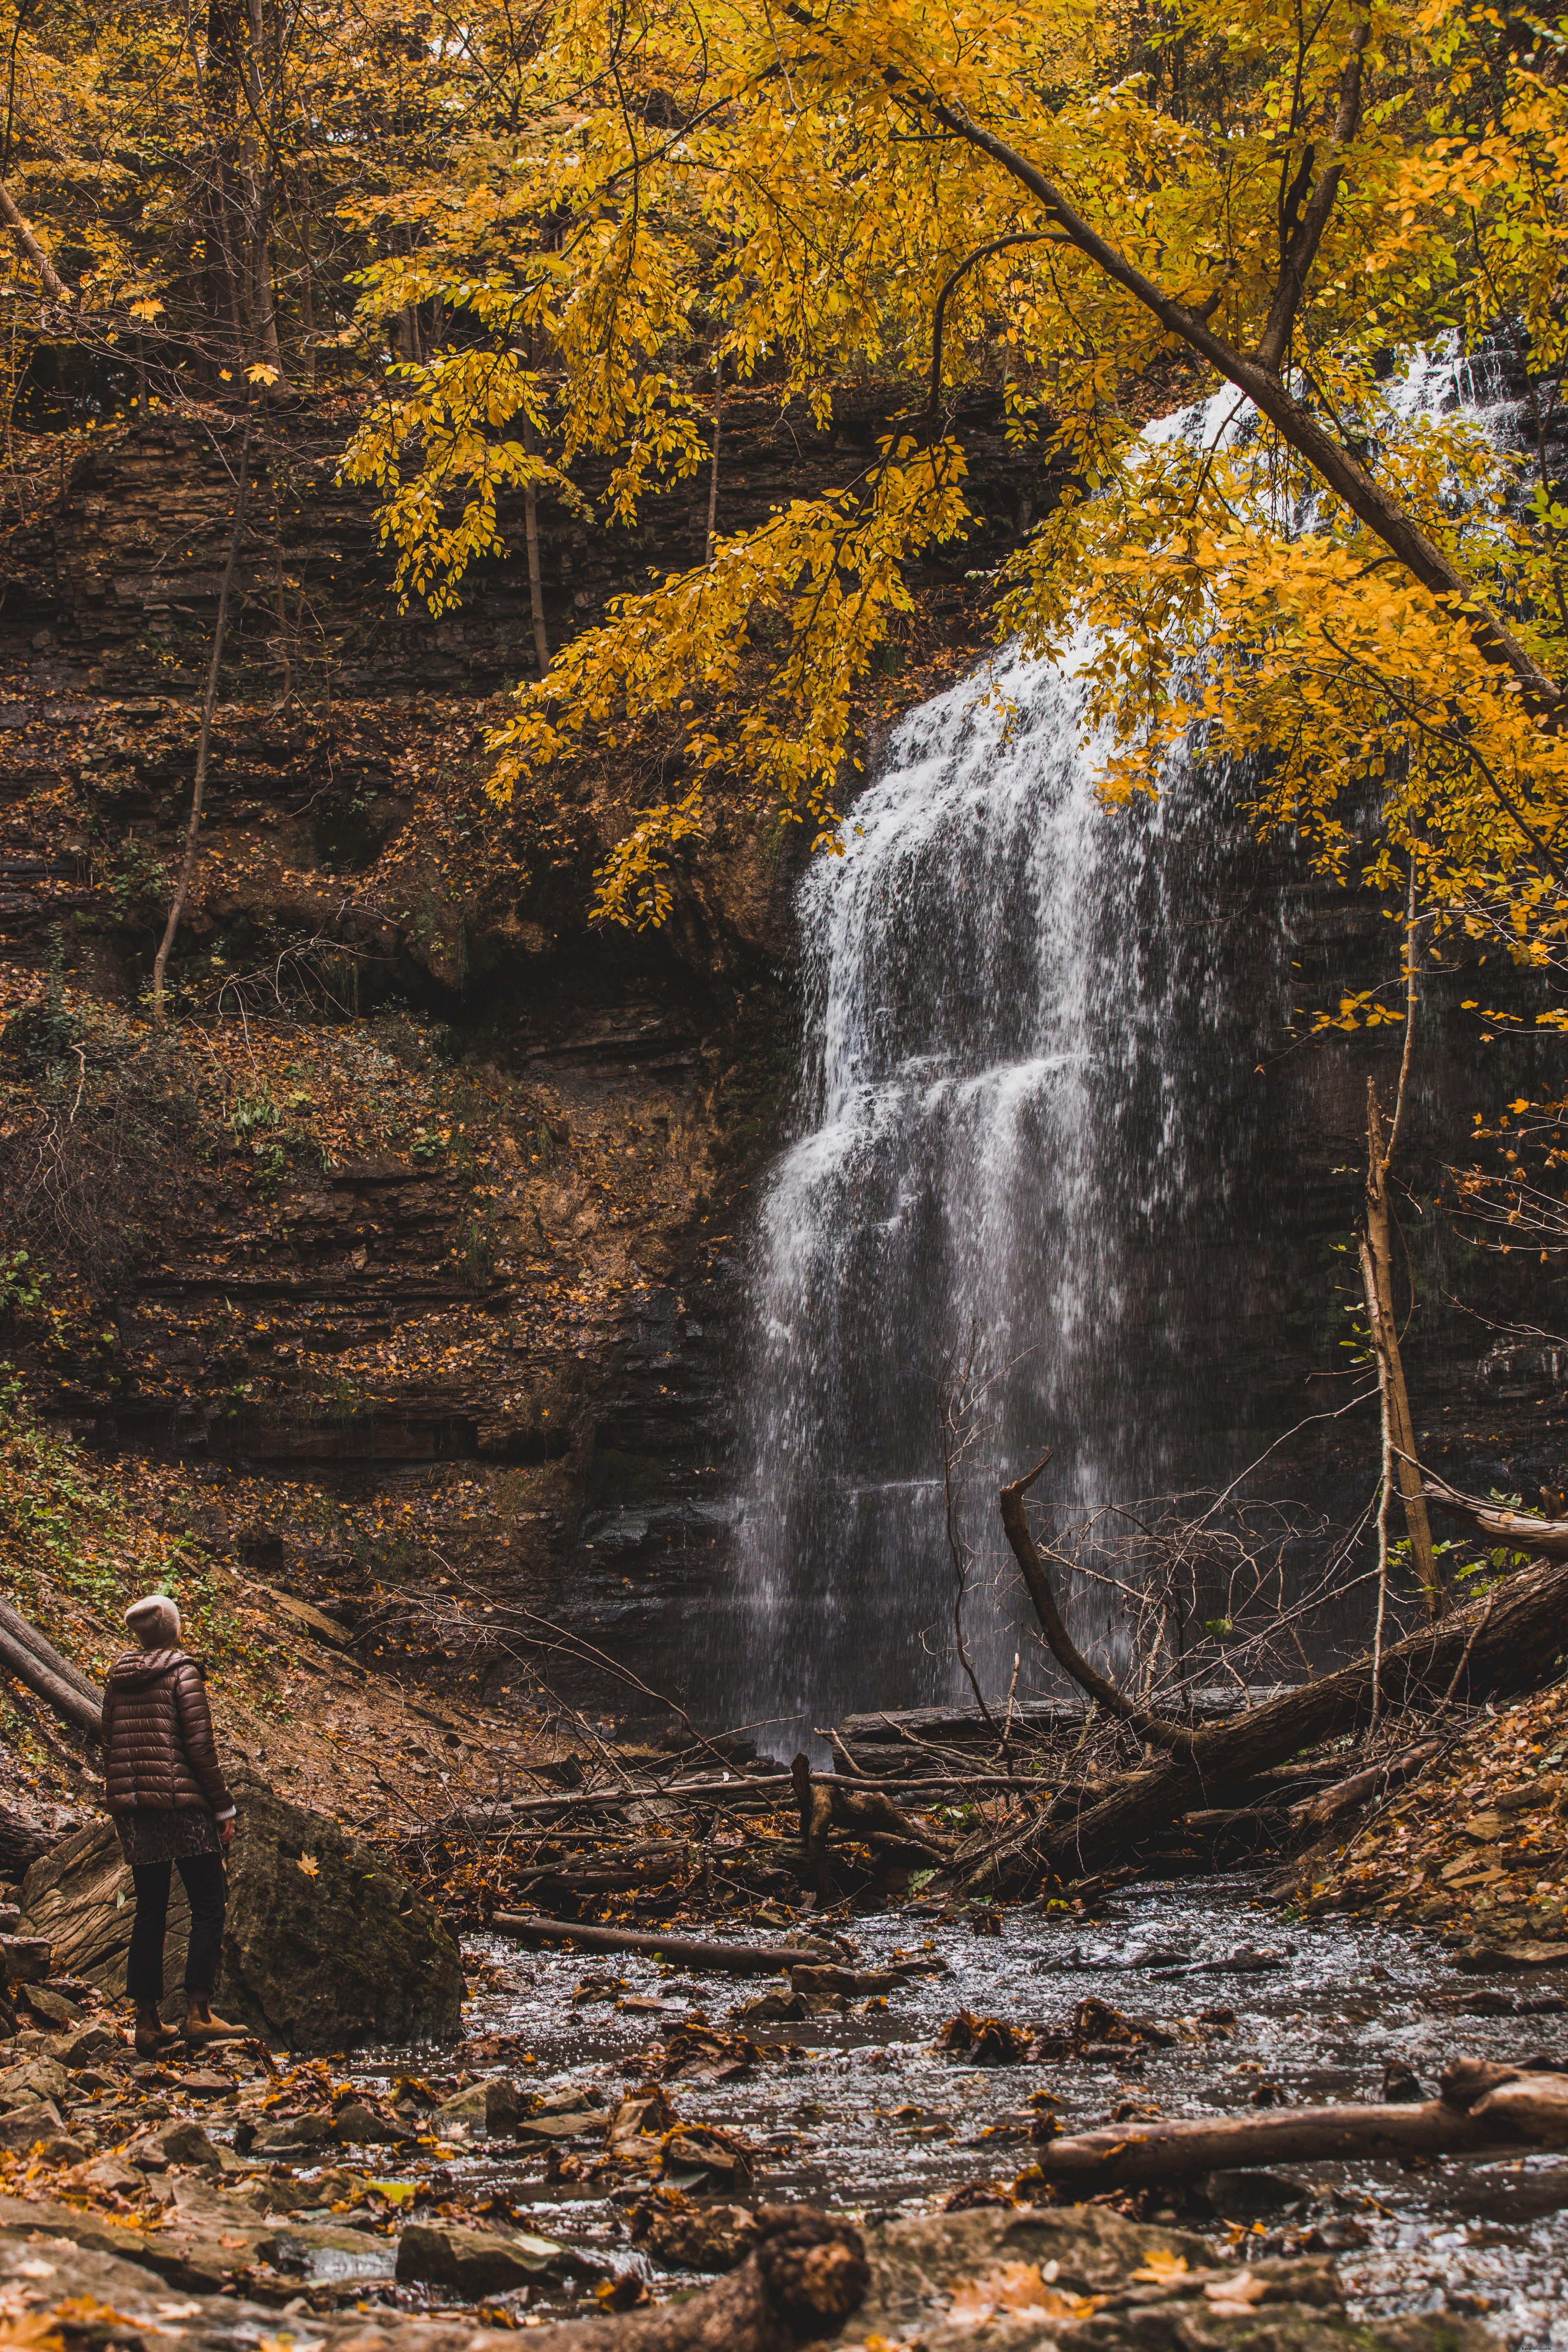 Caminante mira hacia arriba en la cascada en la foto de otoño